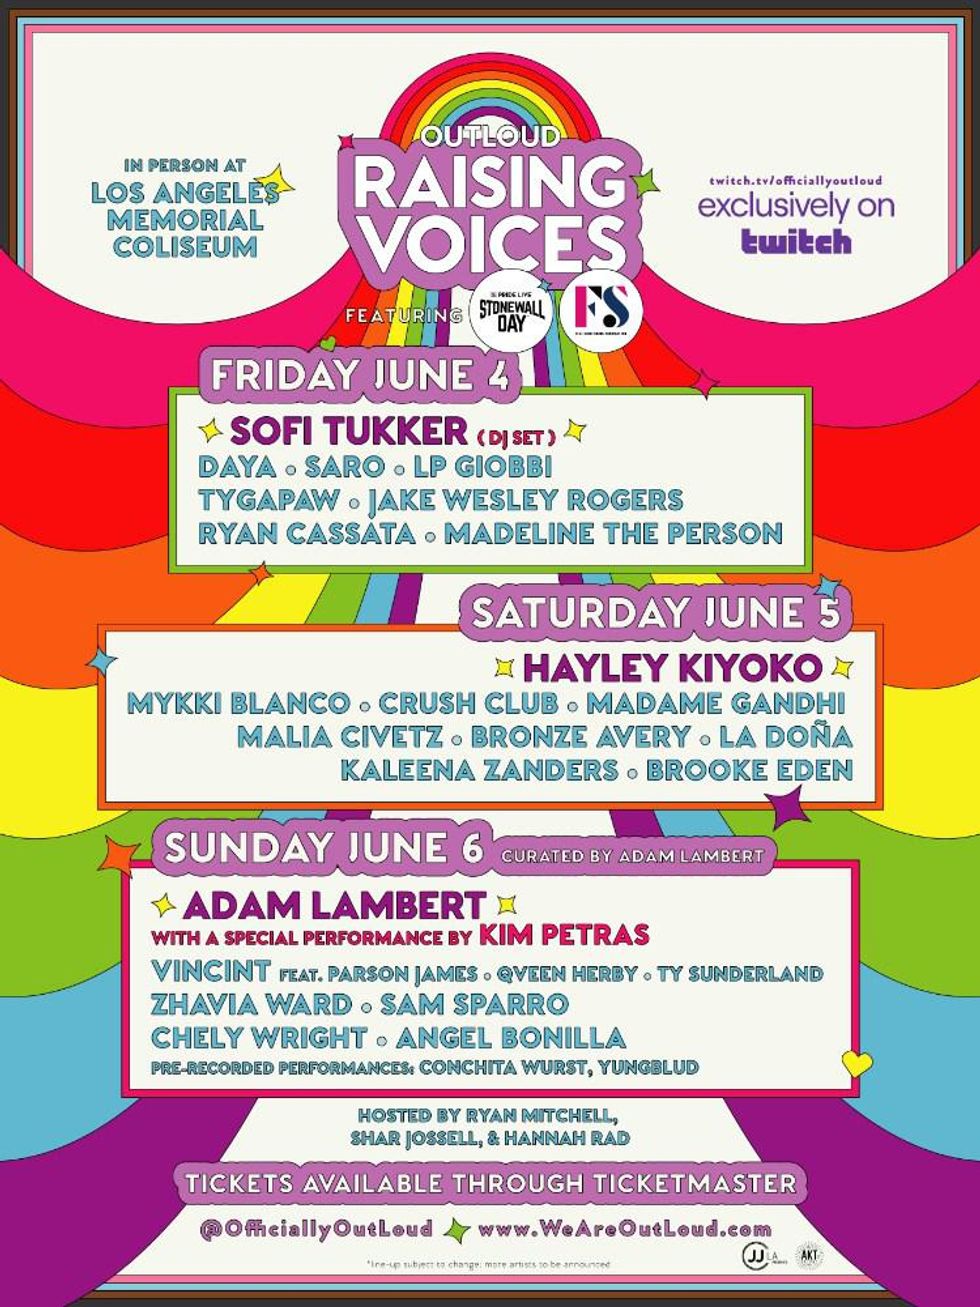 Hayley Kiyoko & Adam Lambert Are Headlining This LGBTQ+ Music Festival